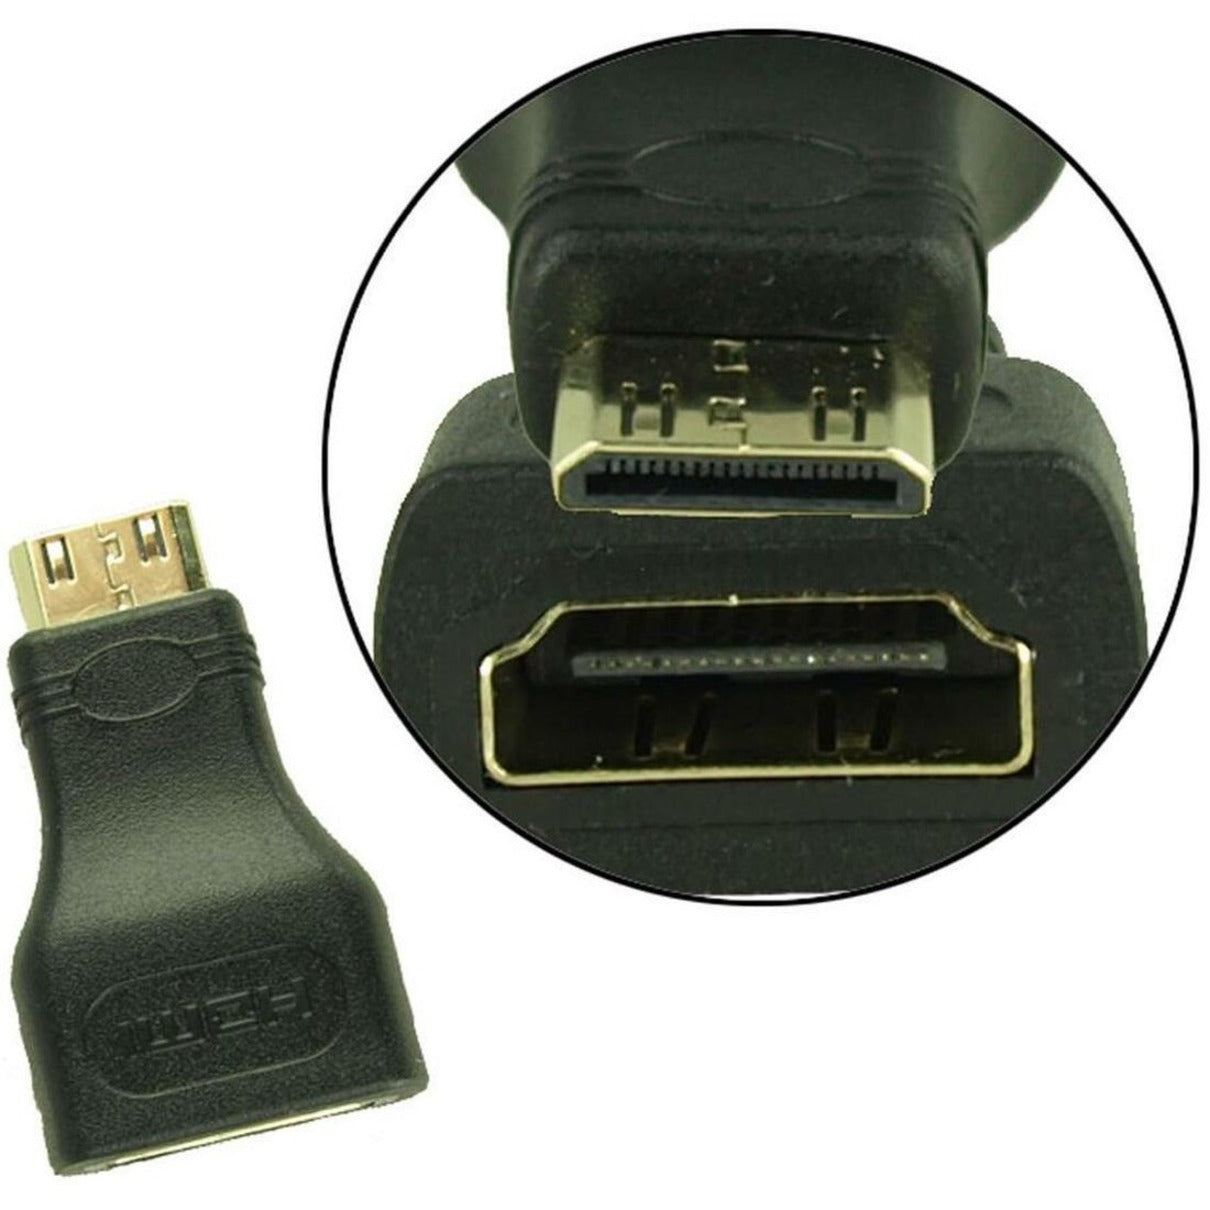 4XEM 4XHDMIMINI15FT 15FT Mini HDMI To HDMI M/M Adapter Cable 10.2 Gbit/s Data Transfer Rate Gold Plated Connectors  4XEM 4XHDMIMINI15FT 15FT Mini HDMI a HDMI M/M Cavo adattatore Velocità di trasferimento dati di 102 Gbit/s Connettori placcati in oro